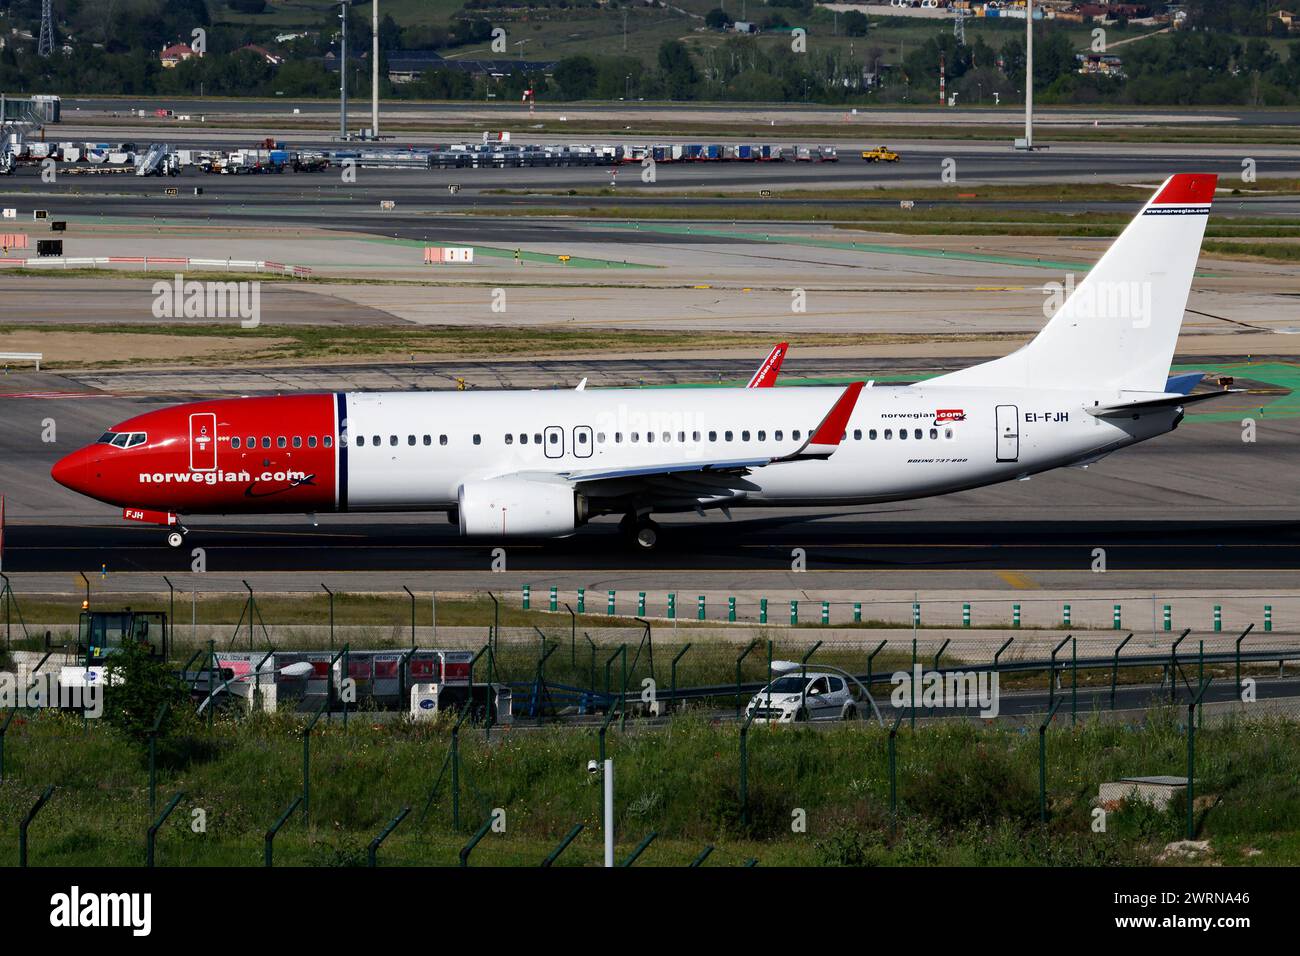 Madrid, Spagna - 4 maggio 2016: Aereo passeggeri Norwegian Air Shuttle in aeroporto. Pianificare i viaggi di volo. Aviazione e aerei. Trasporto aereo. Ingresso globale Foto Stock